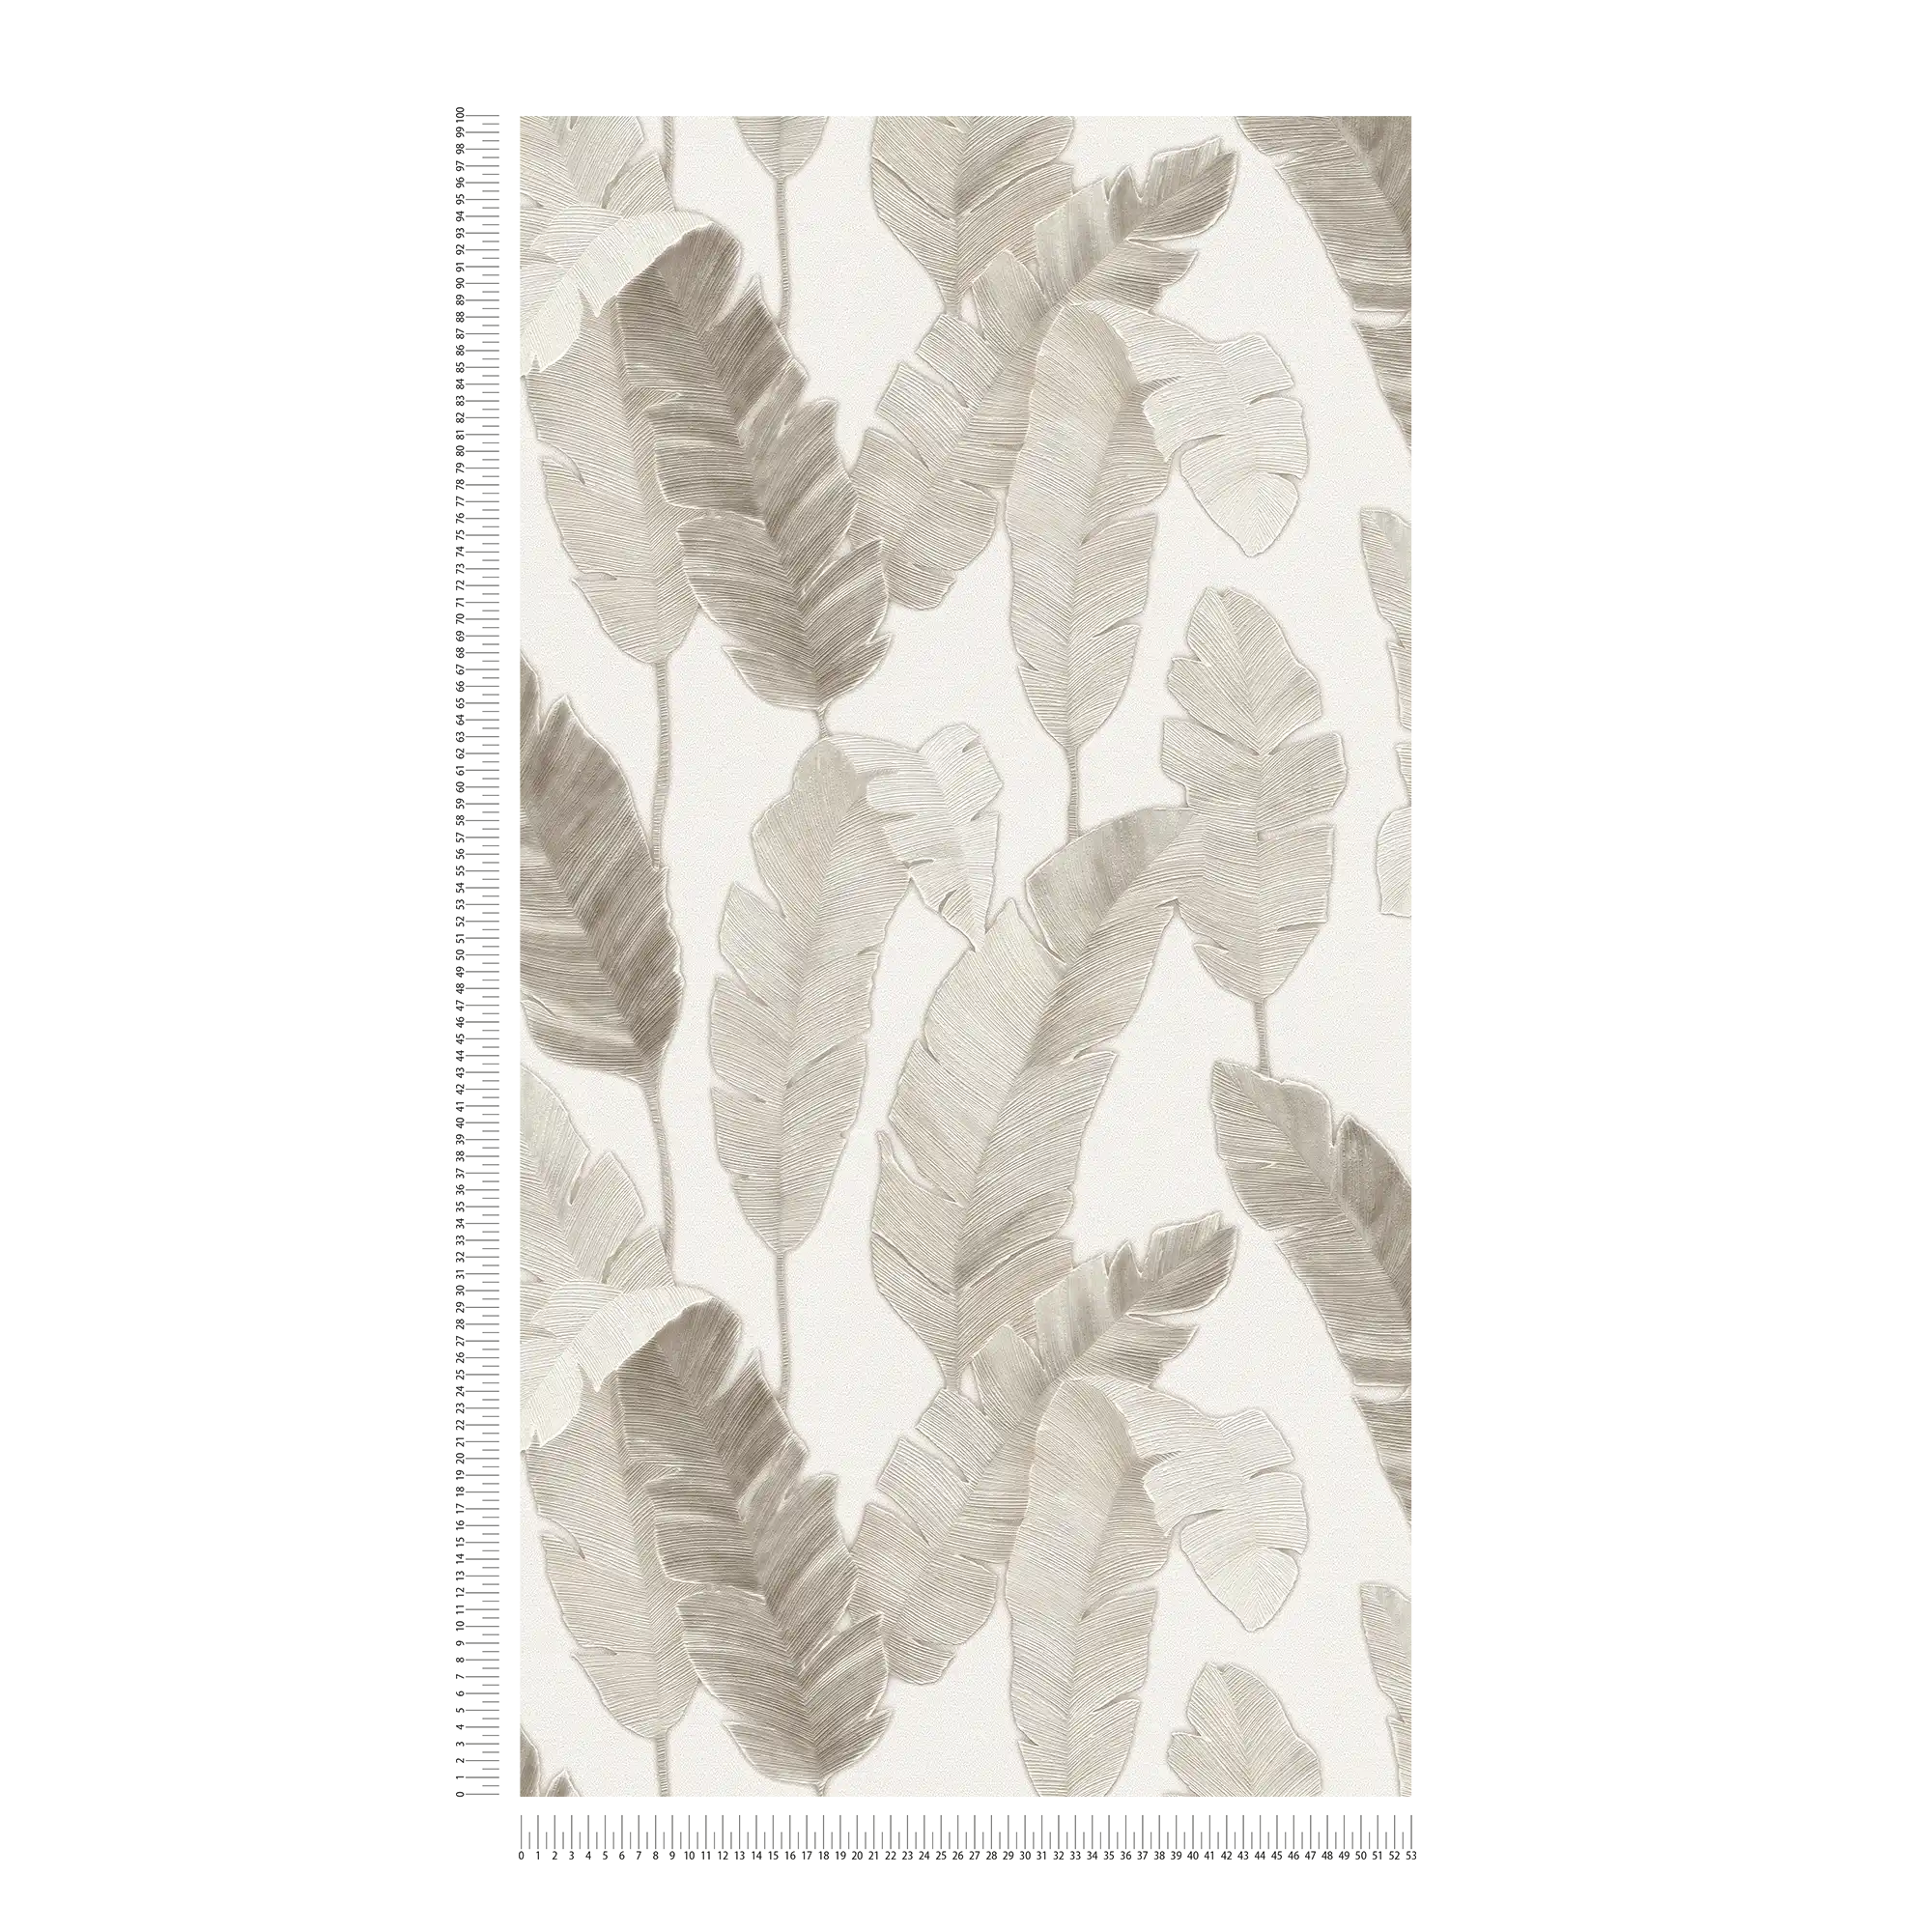             Vliesbehang met subtiele palmbladeren - wit, beige, grijs
        